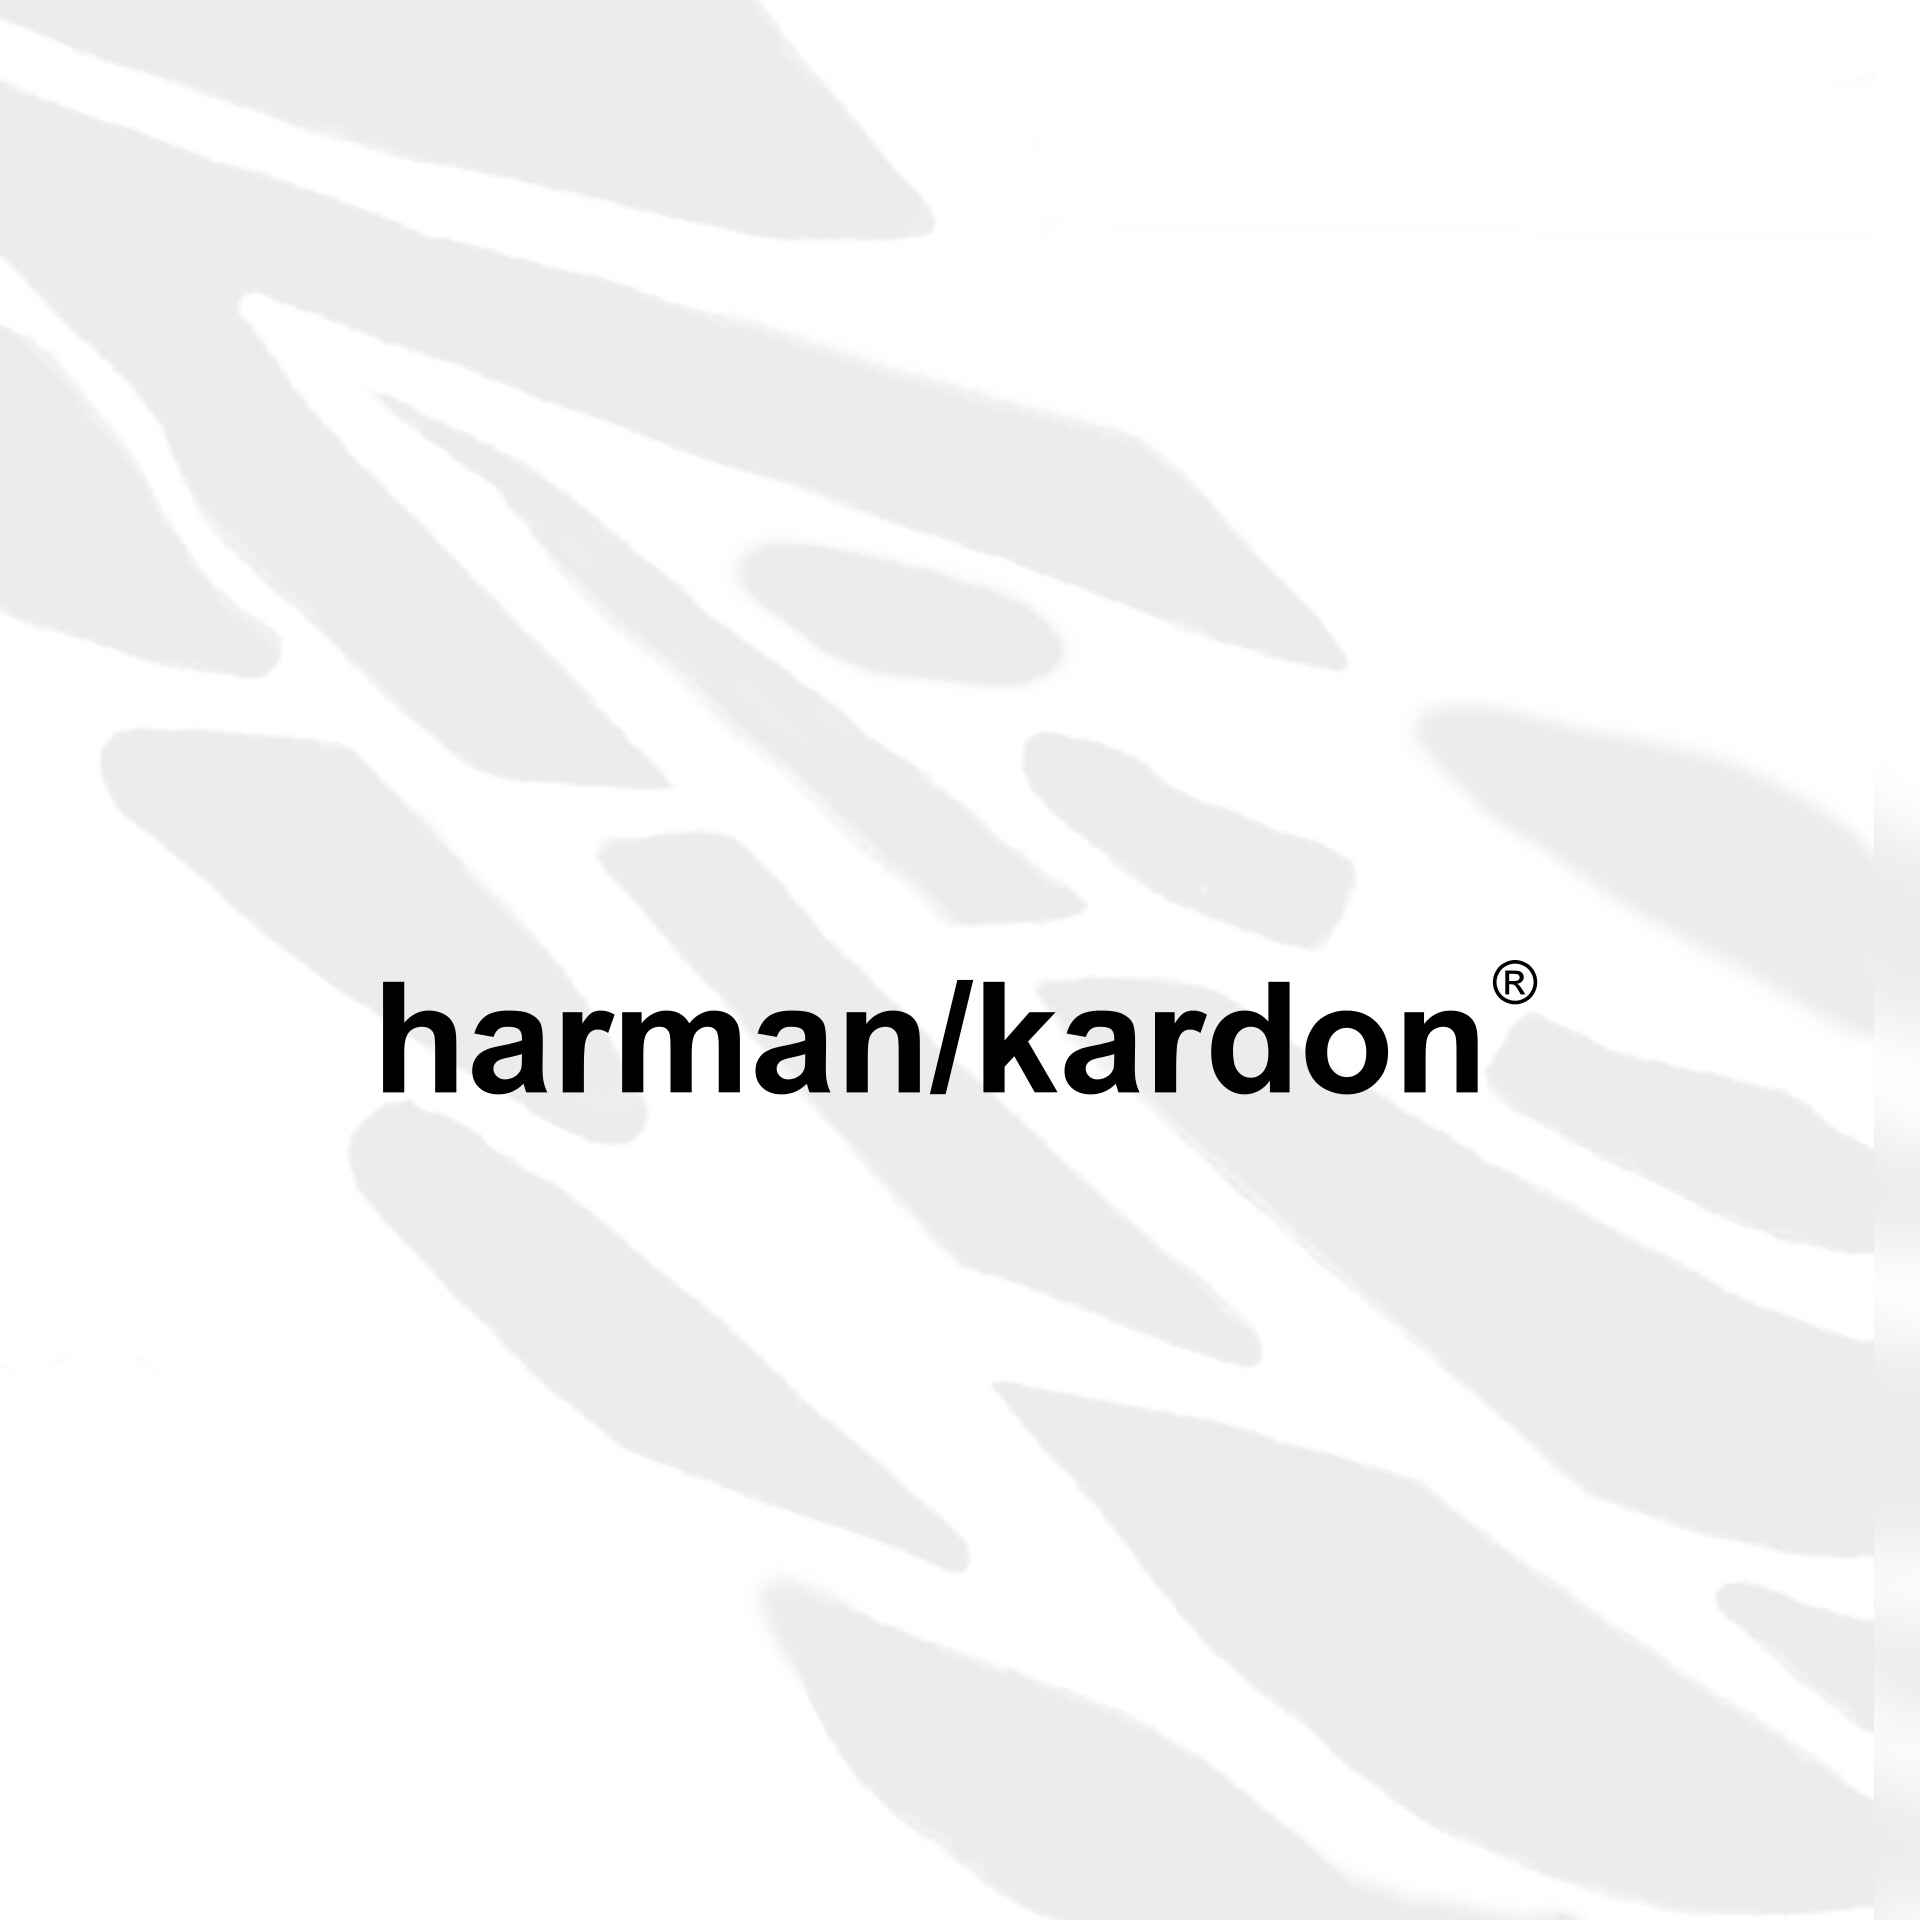 هارمن کاردن - harman/kardon